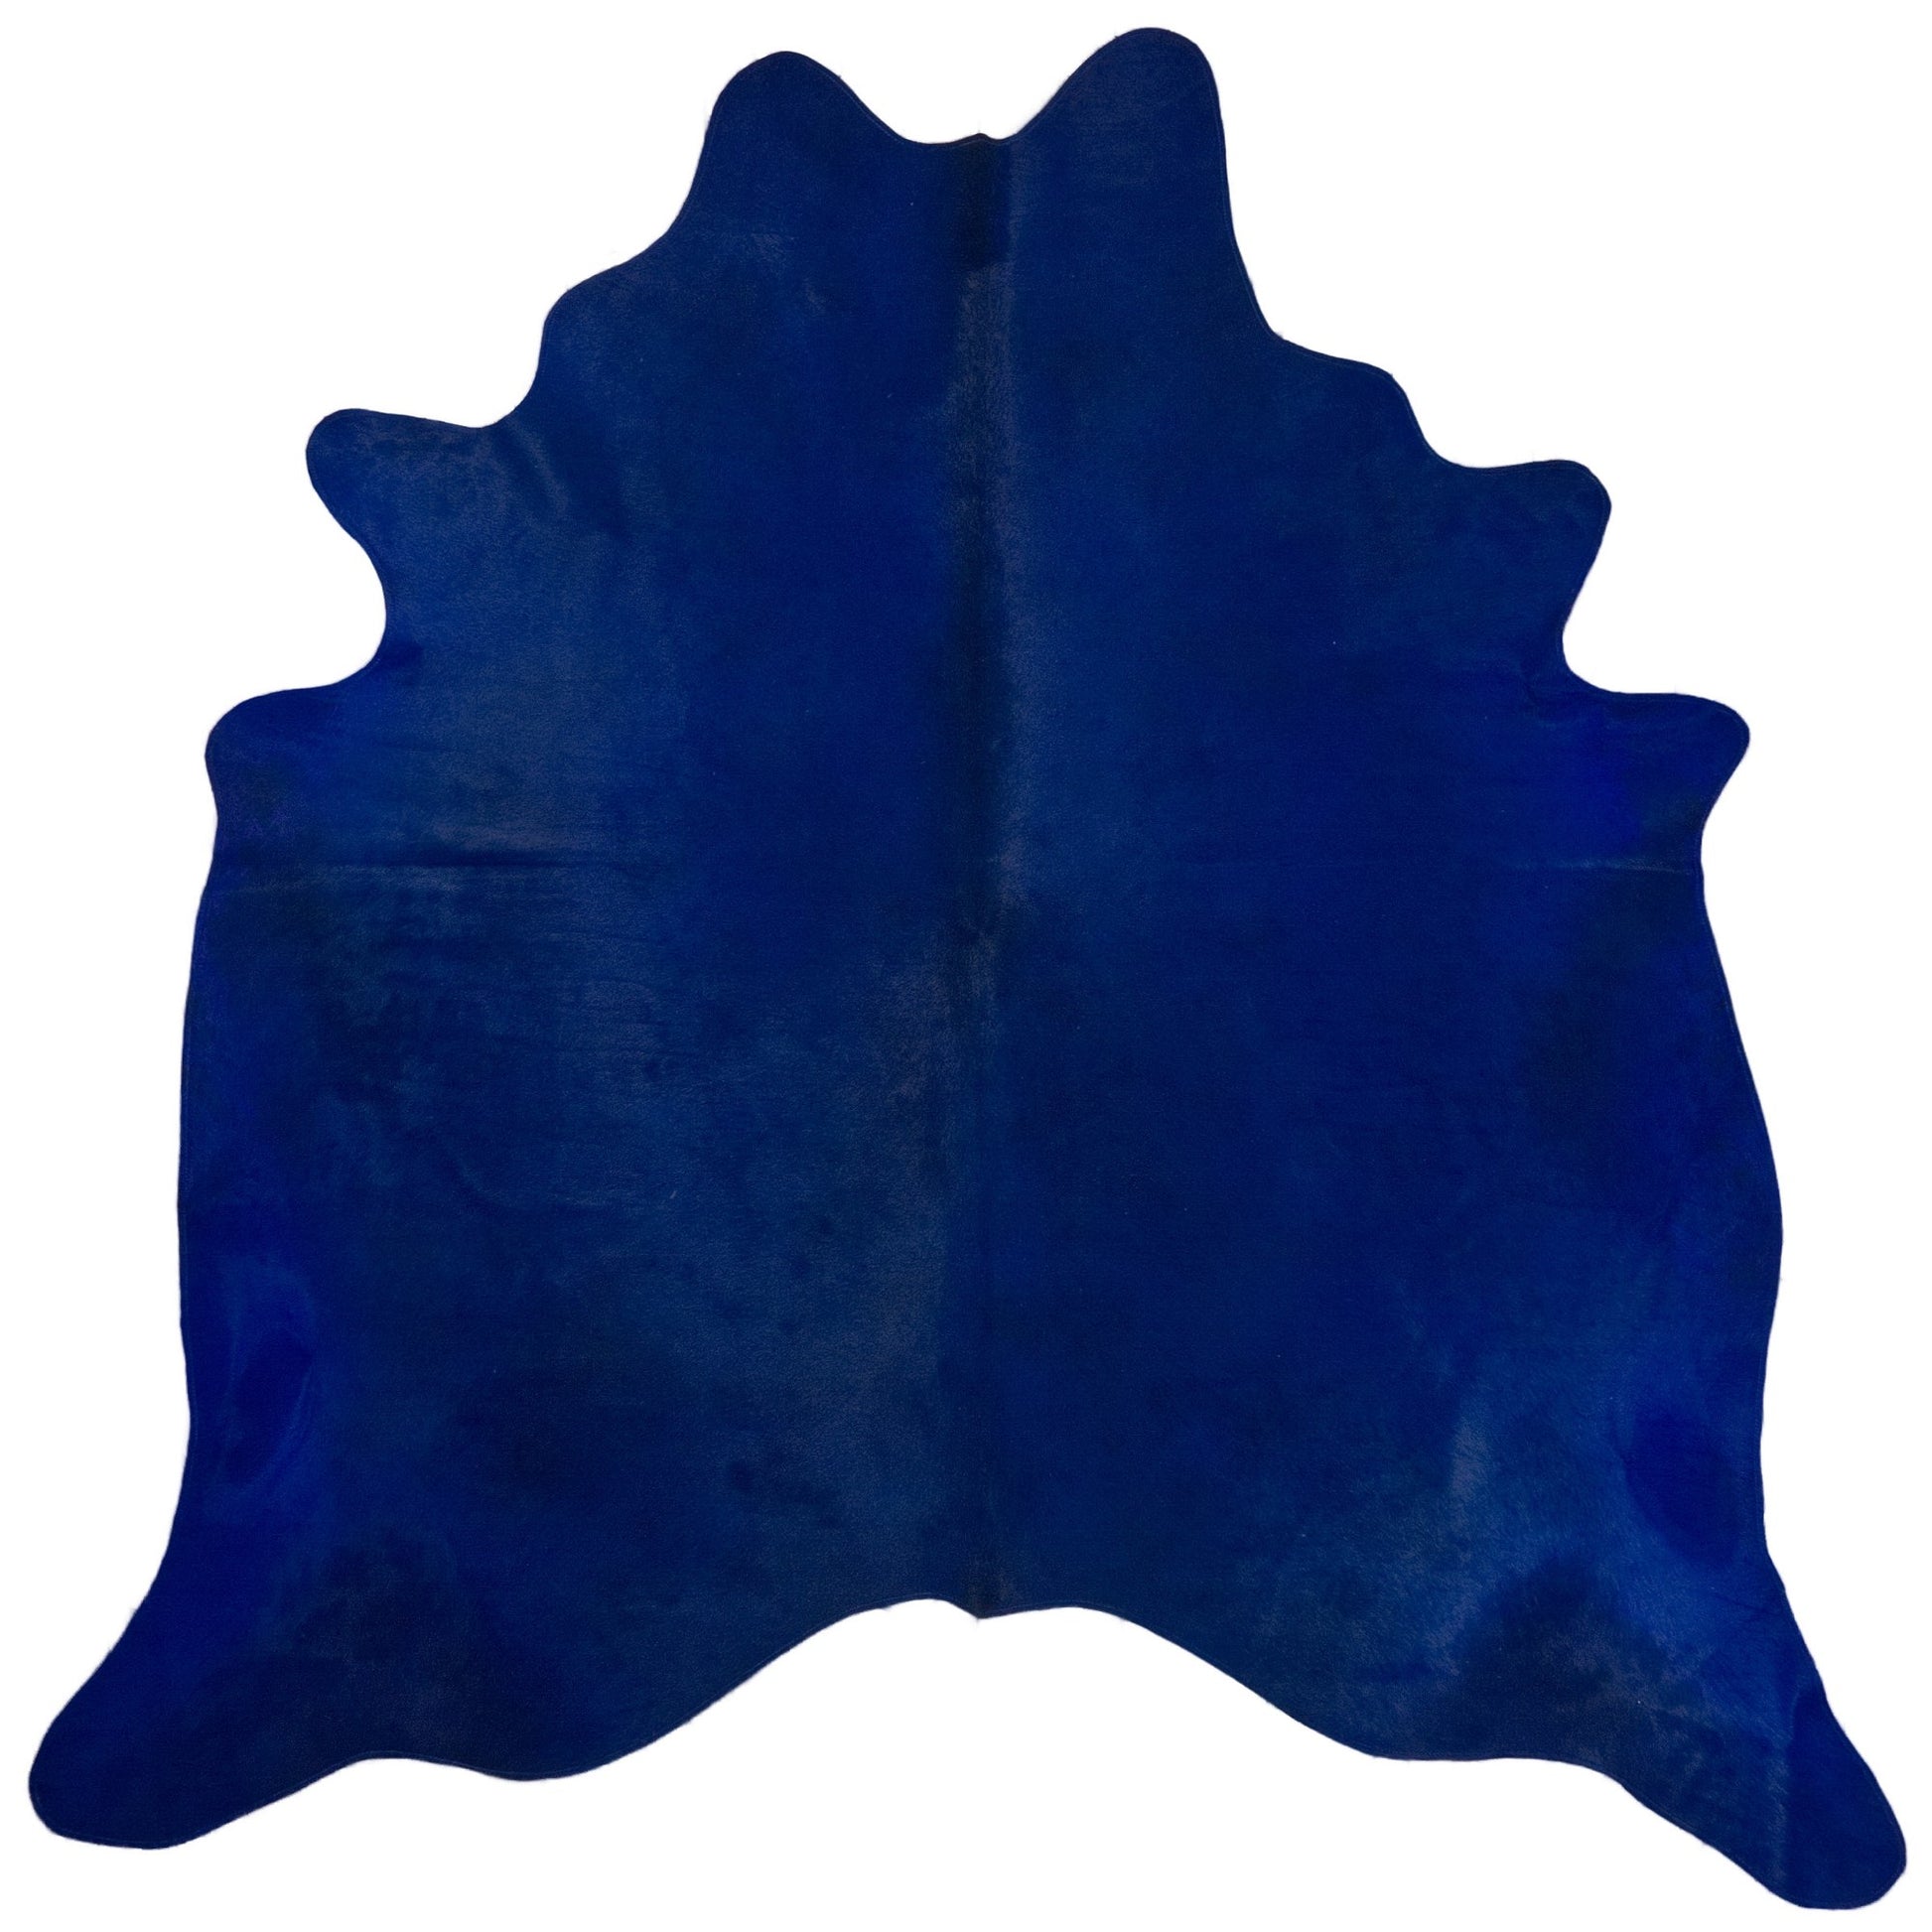 Koeienhuid geverfd kobaltblauw 3-4m2